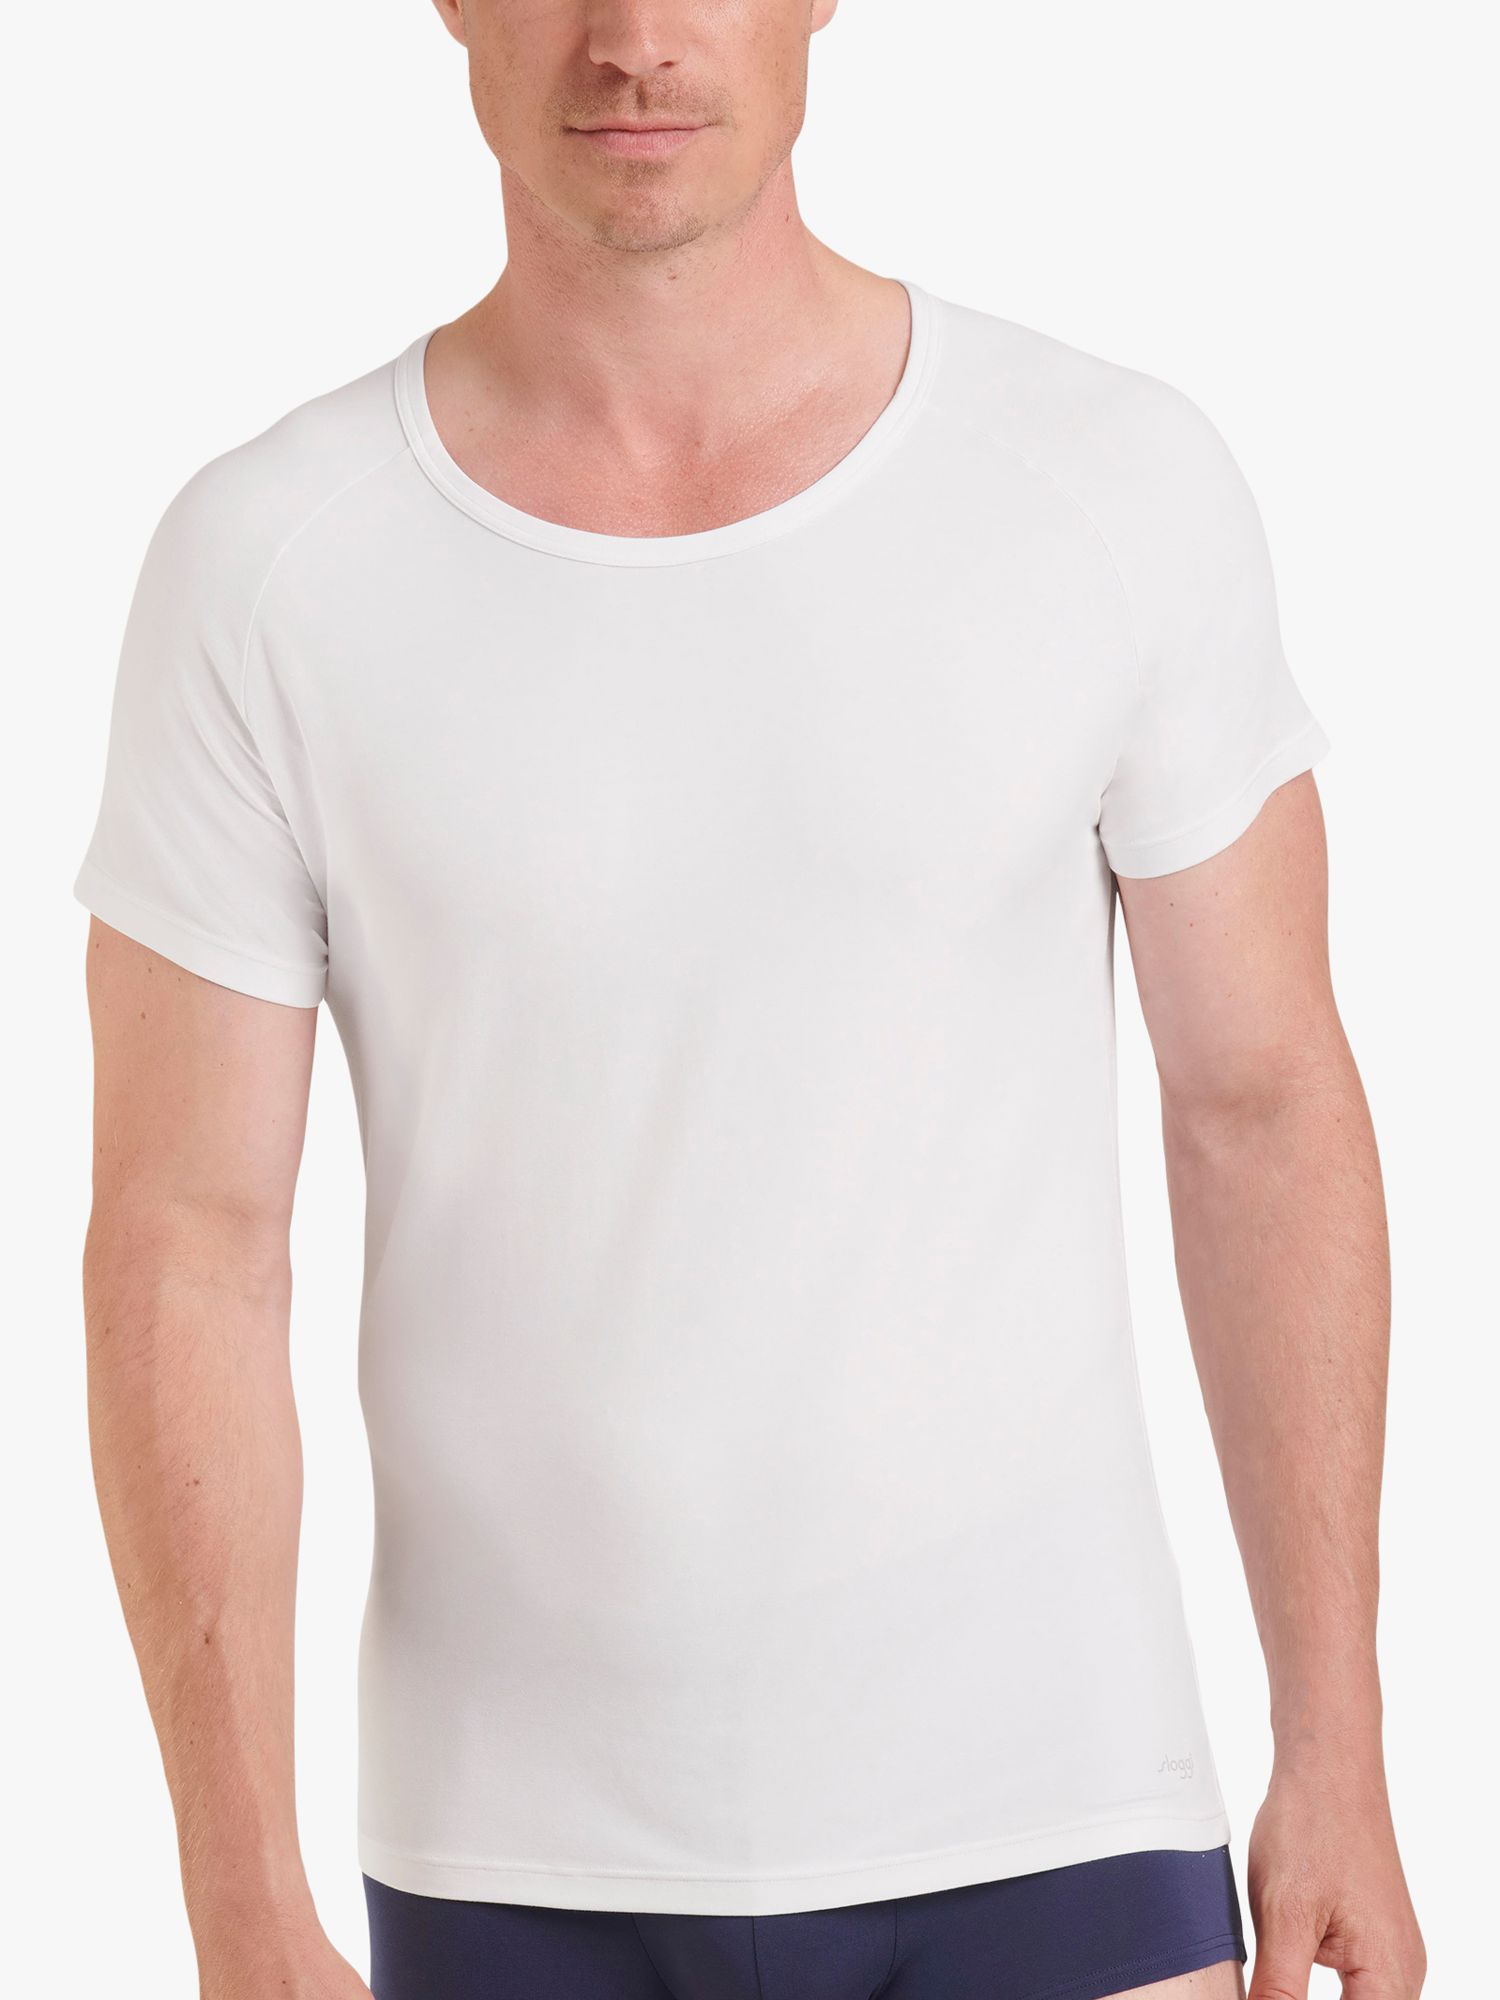 sloggi EVER Soft O-Neck T-Shirt, White, XL